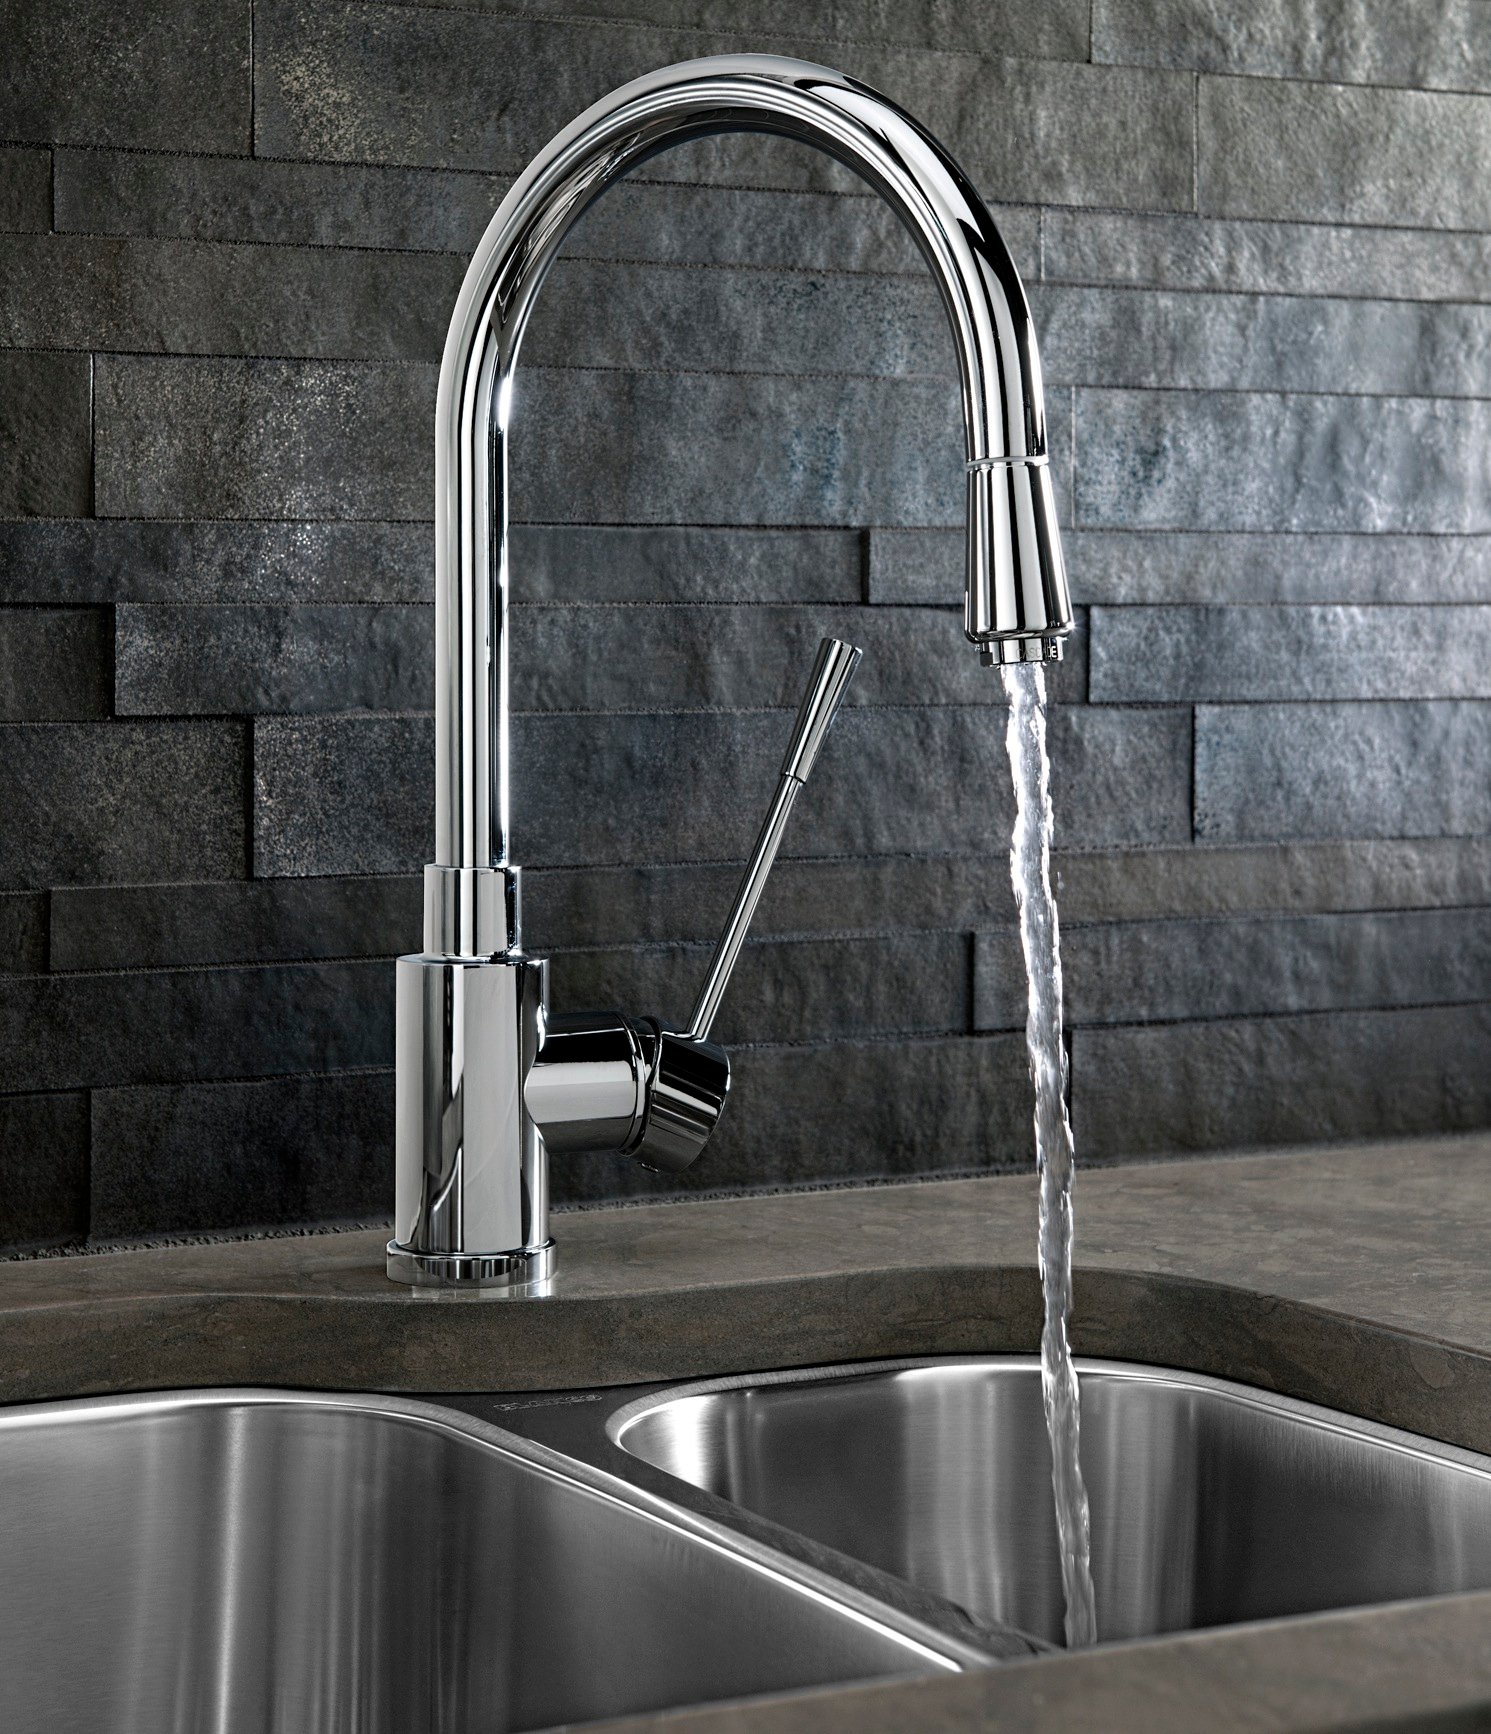 BLANCO KONTROLE™ kitchen faucet with BLANCO SUPREME™ sink